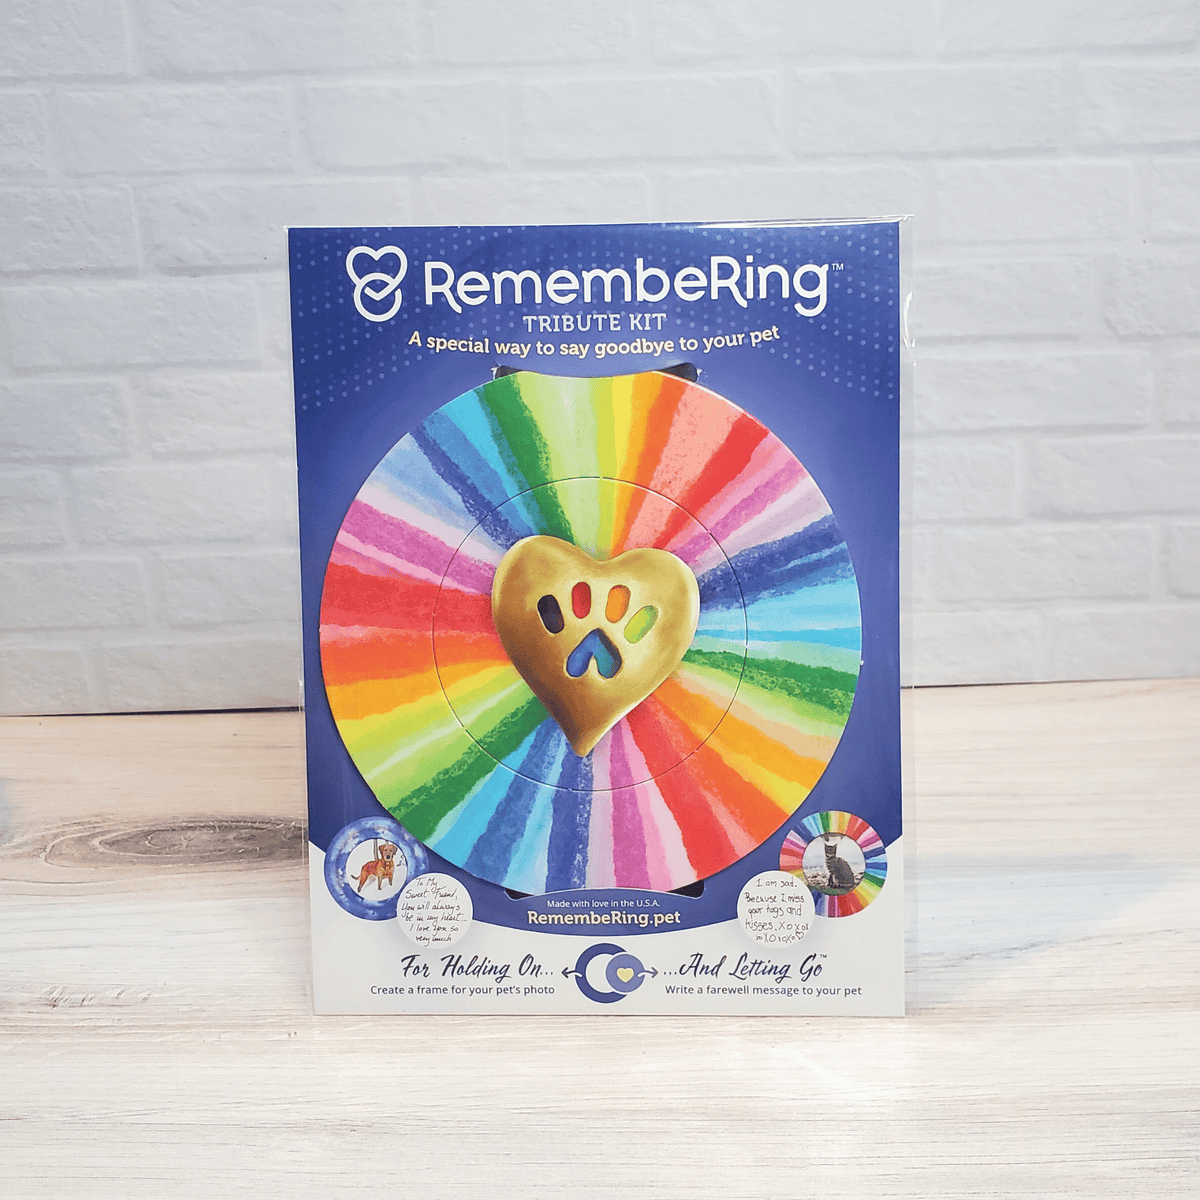 RemembeRing Pet Memorial Tribute Kit - Rainbow Wheel Design